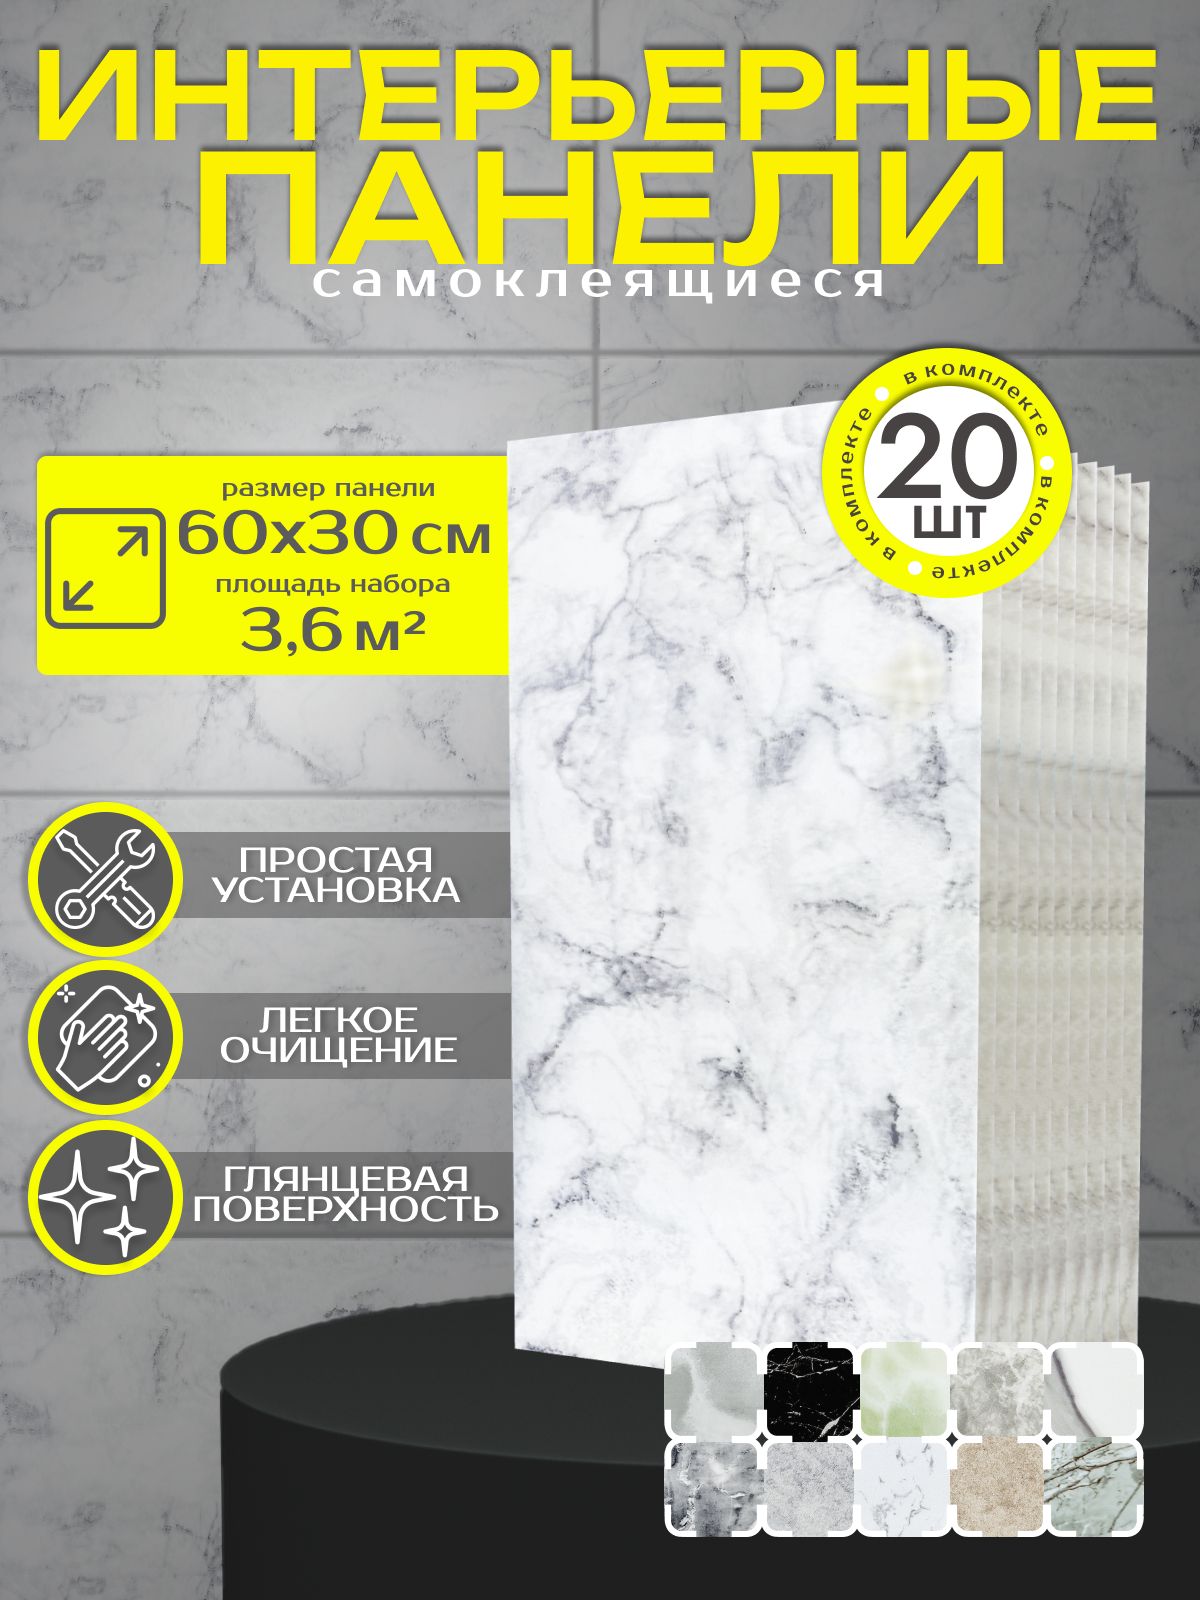 Стеновая панель Reton Group DL_020_komplekt20 мраморный бело-серый 300x600 мм